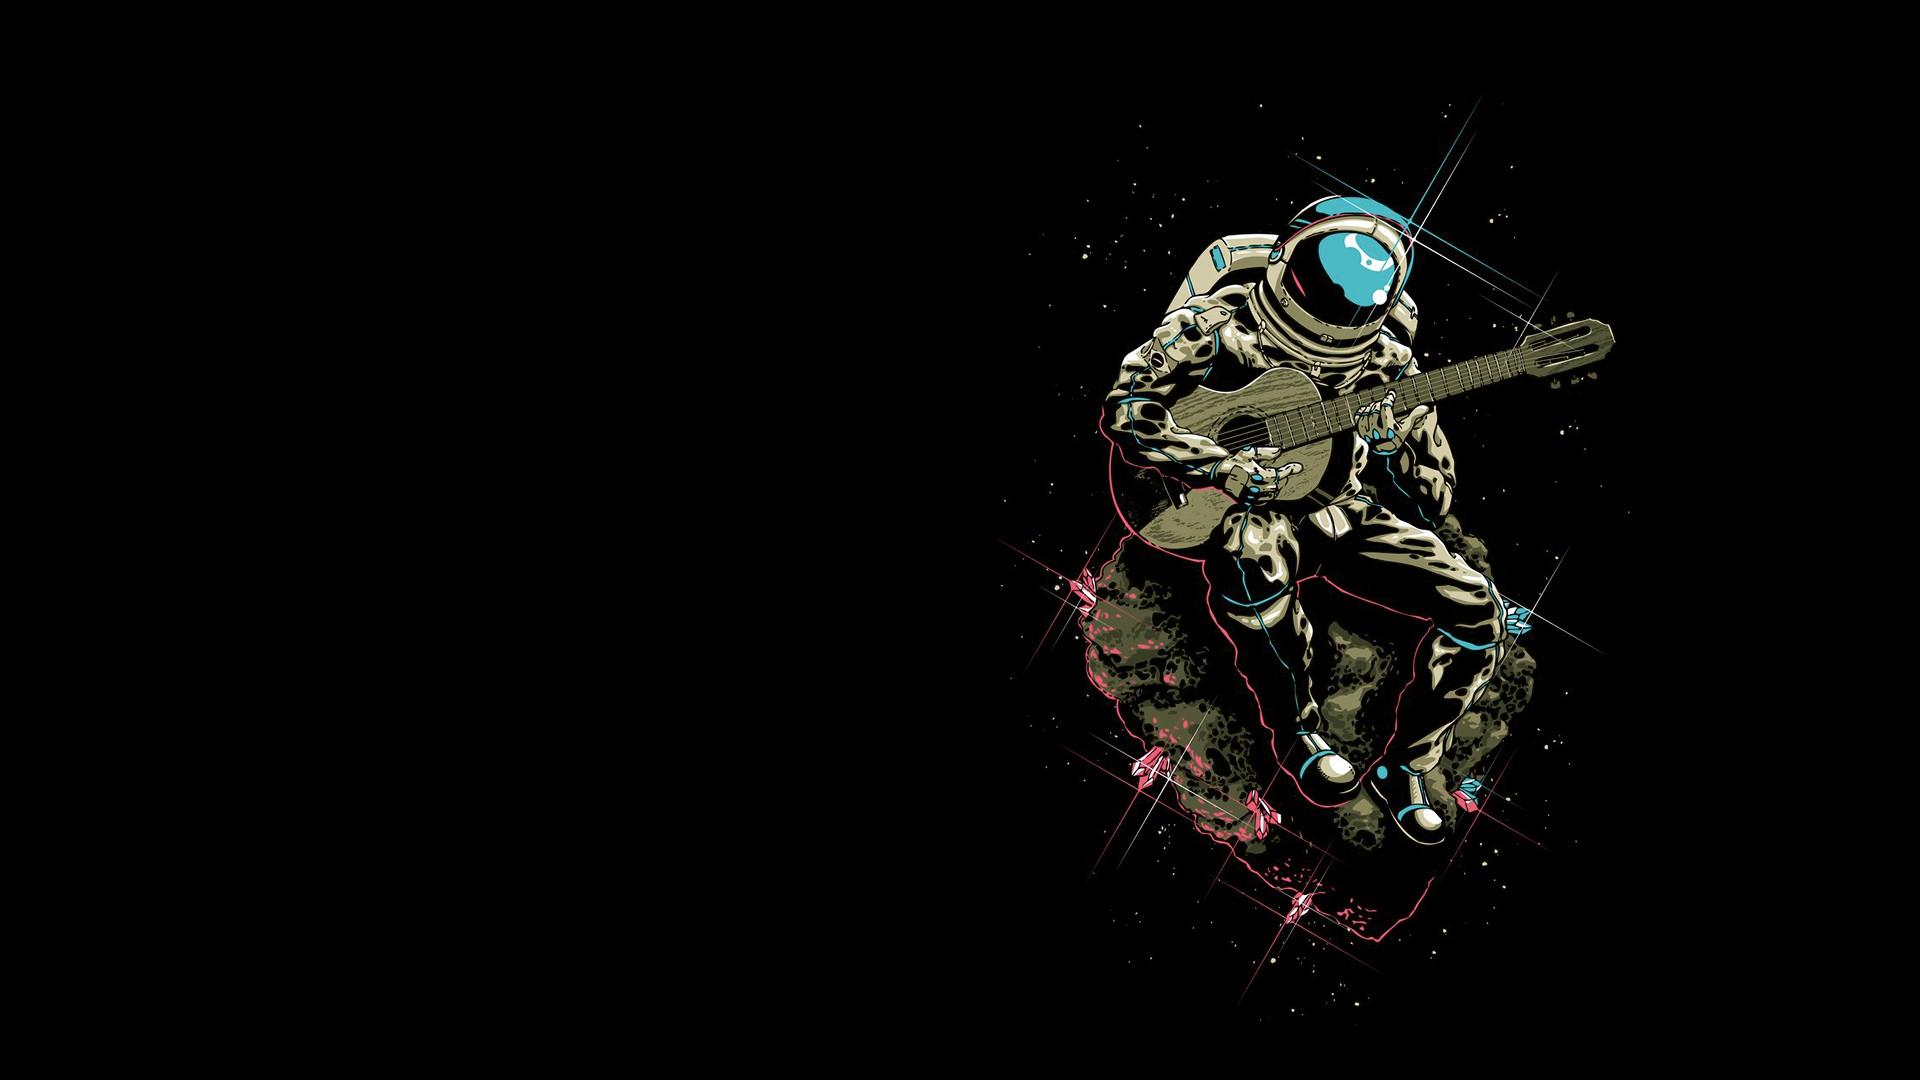 HD Astronaut Wallpaper